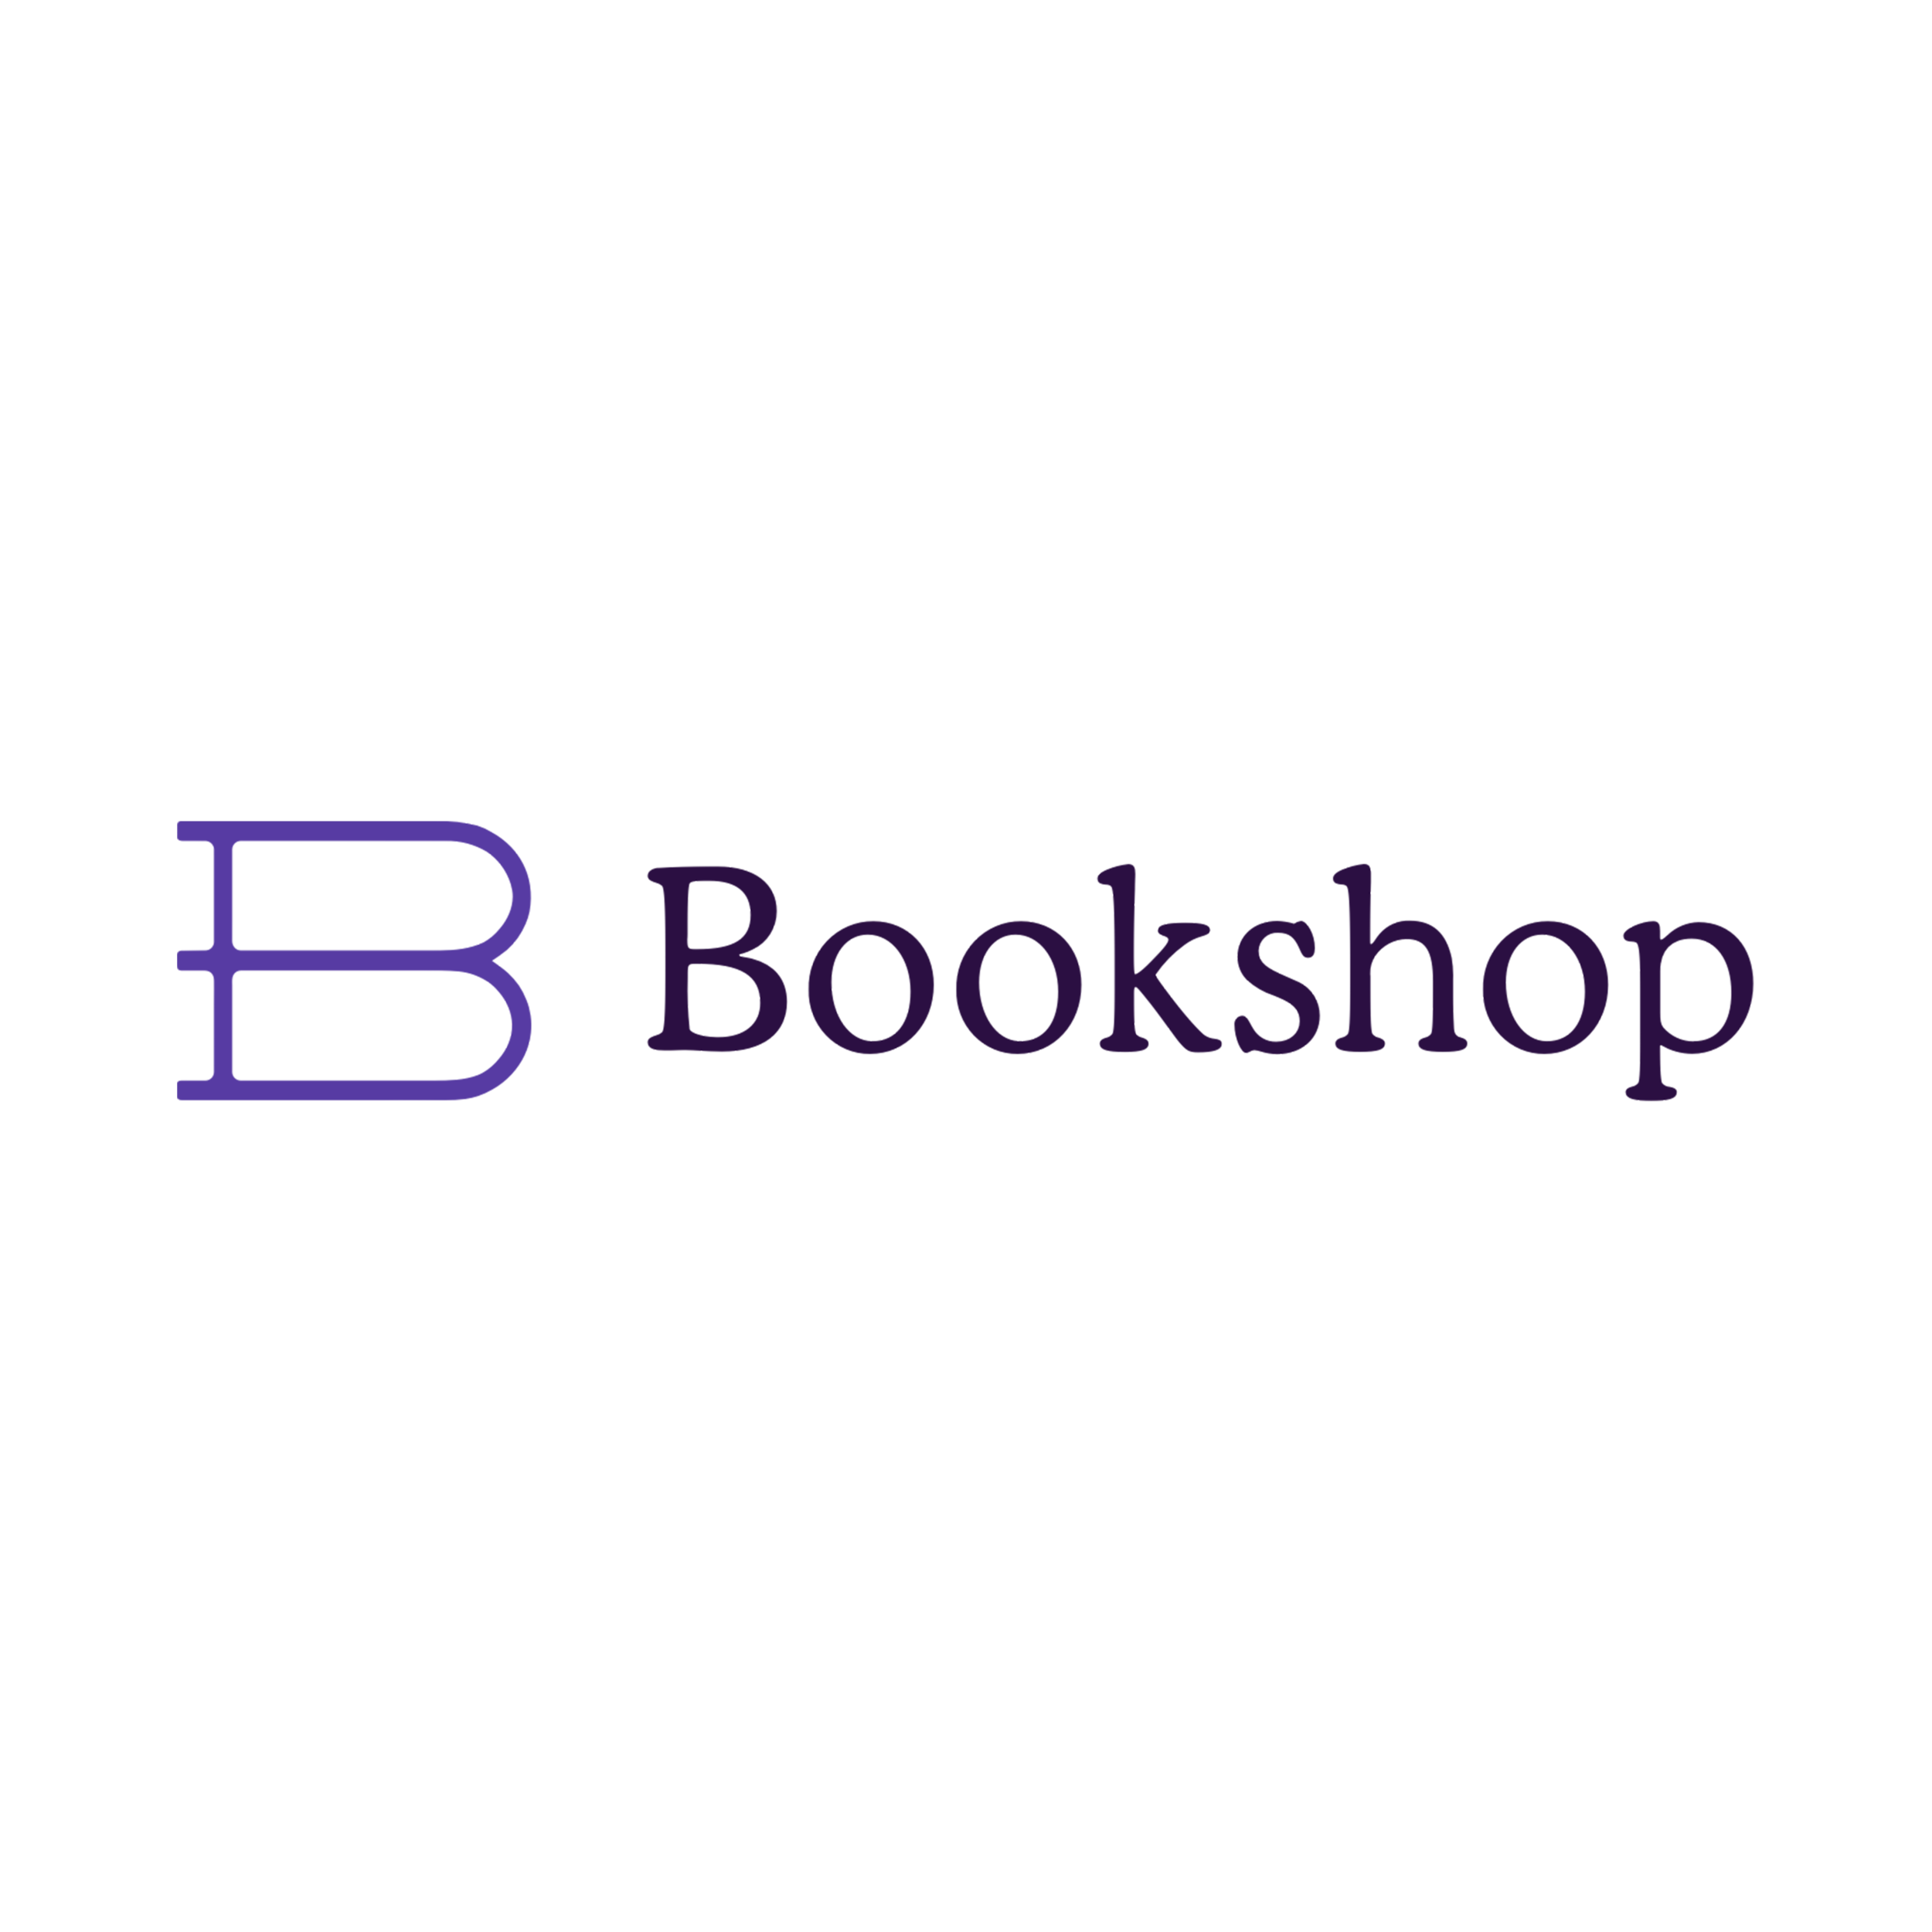 bookshop-logo-transp-SQUARE.png